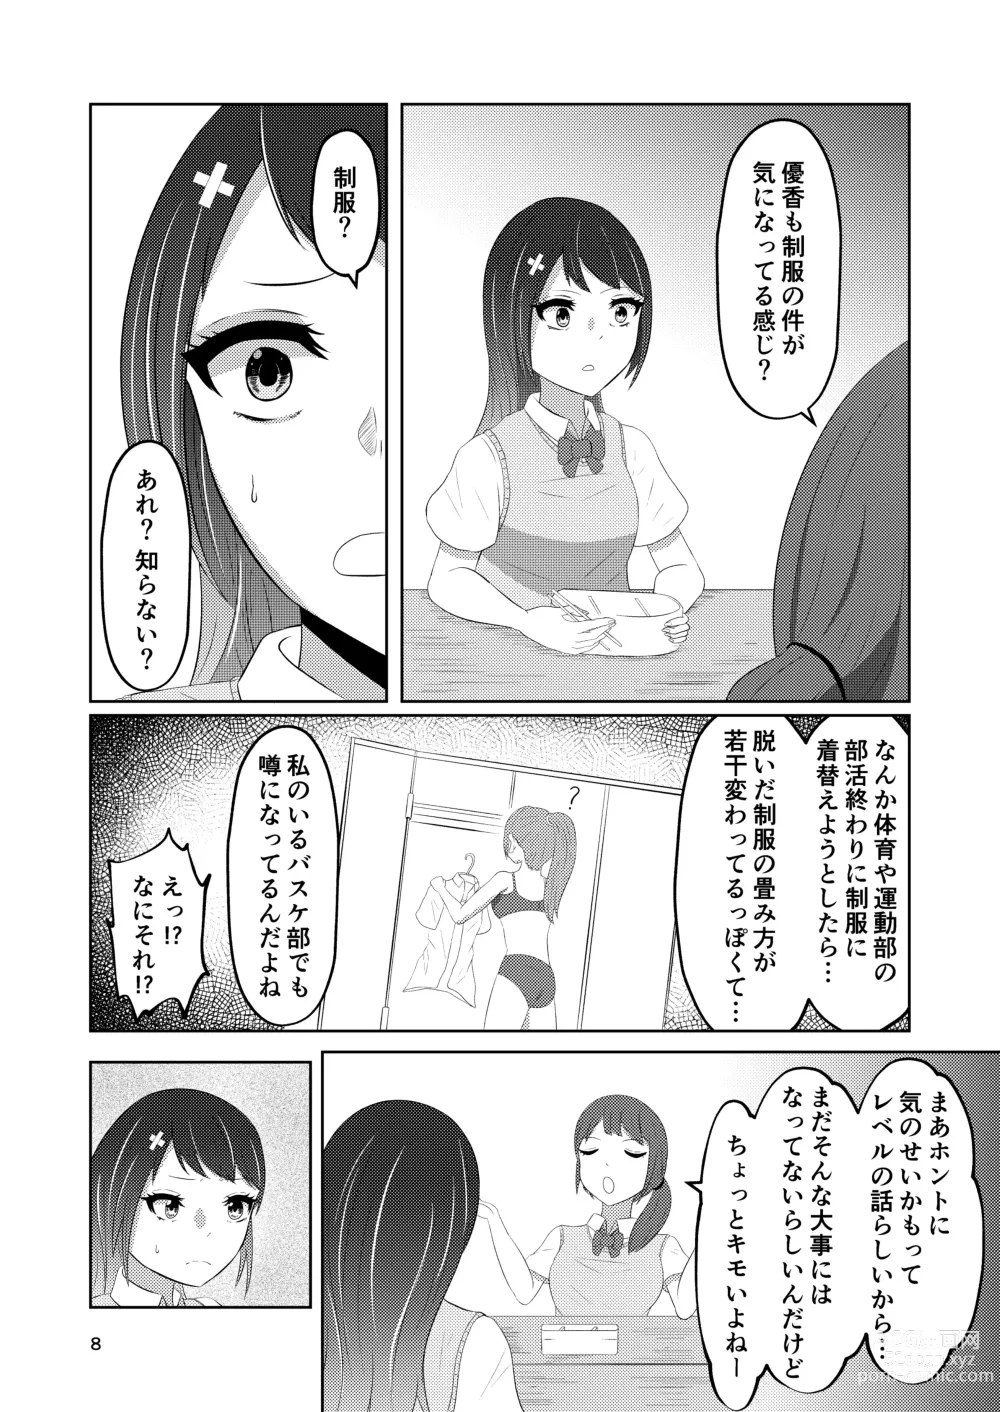 Page 8 of doujinshi Osananajimi no Fuuki Iinchou  wa Boku ni Somaru